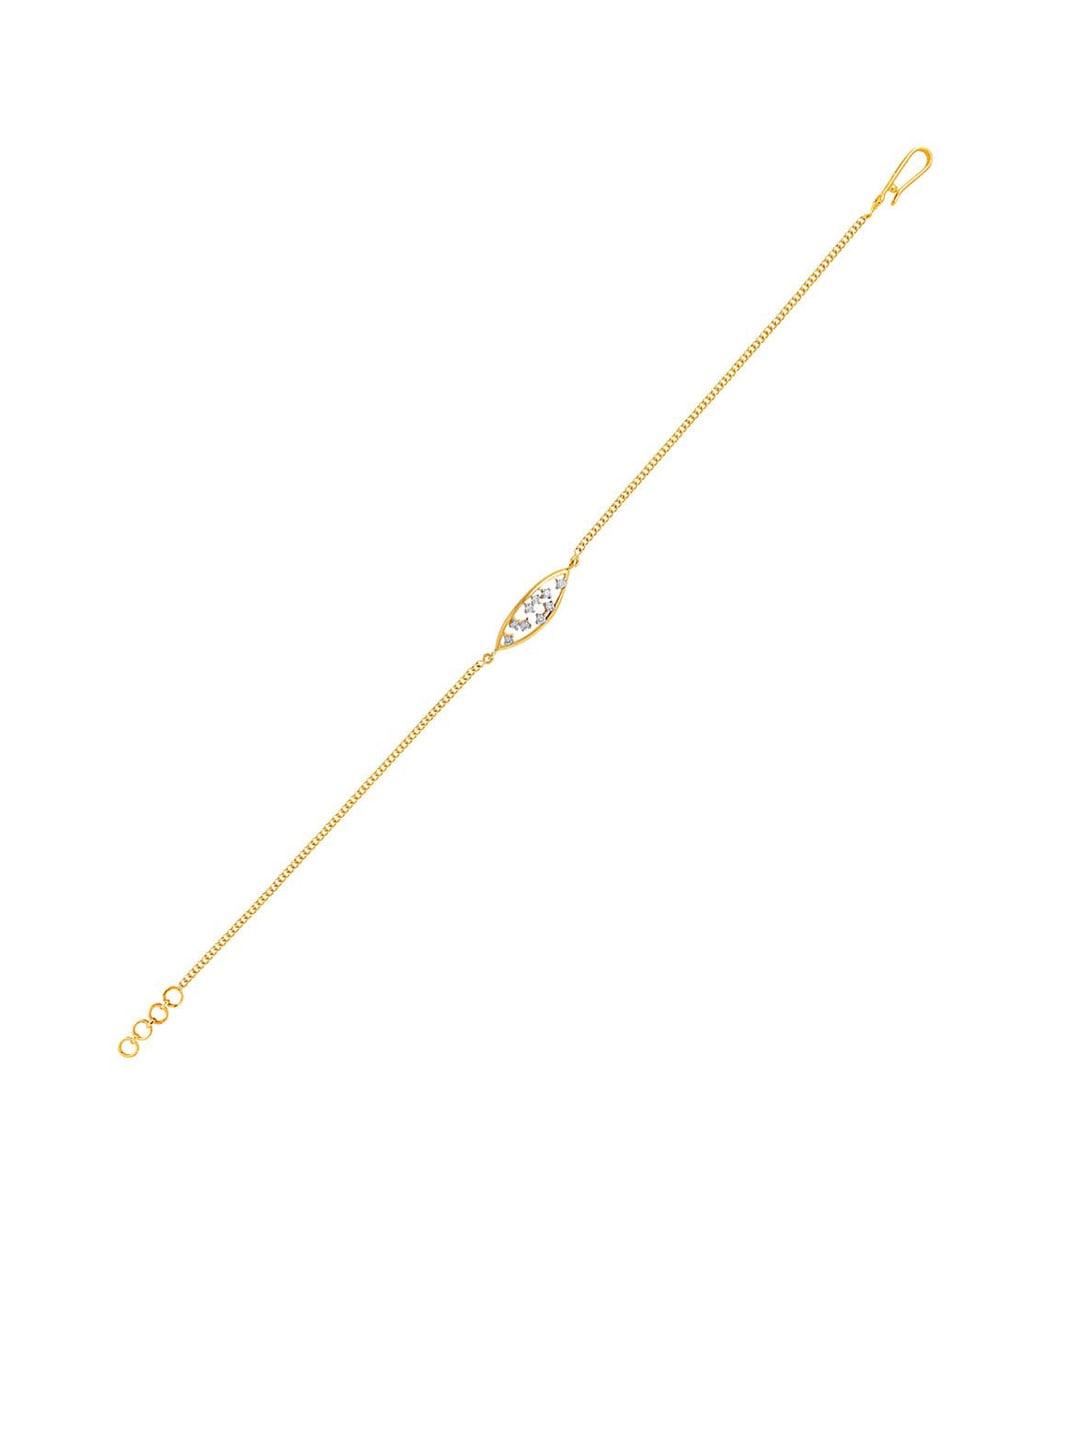 SENCO Vision Delight 18KT Gold Diamond-Studded Bracelet-2.3gm